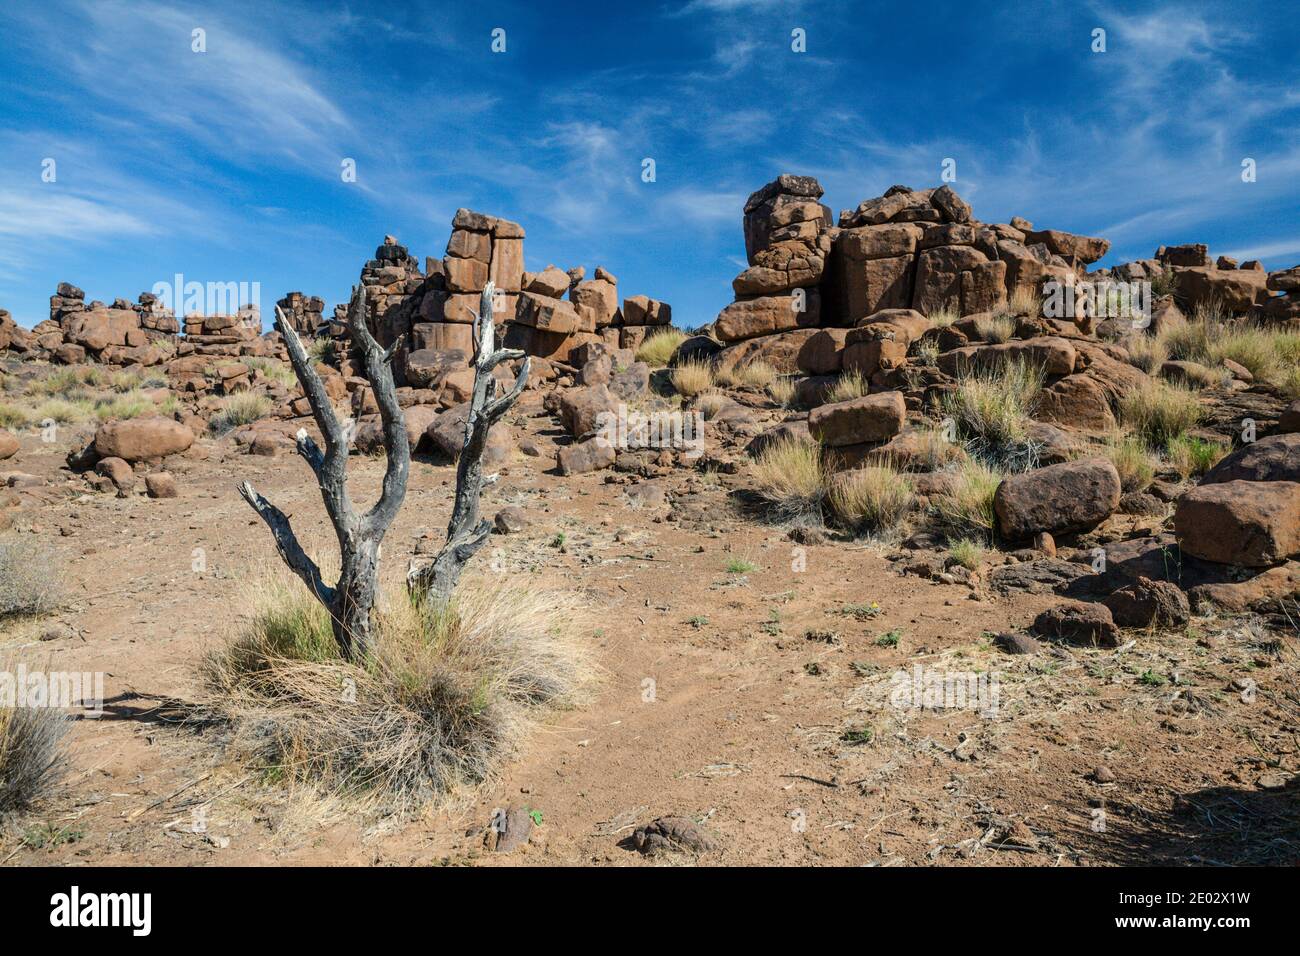 Rocks of Giants Playground, Keetmanshoop, Namibia Stock Photo